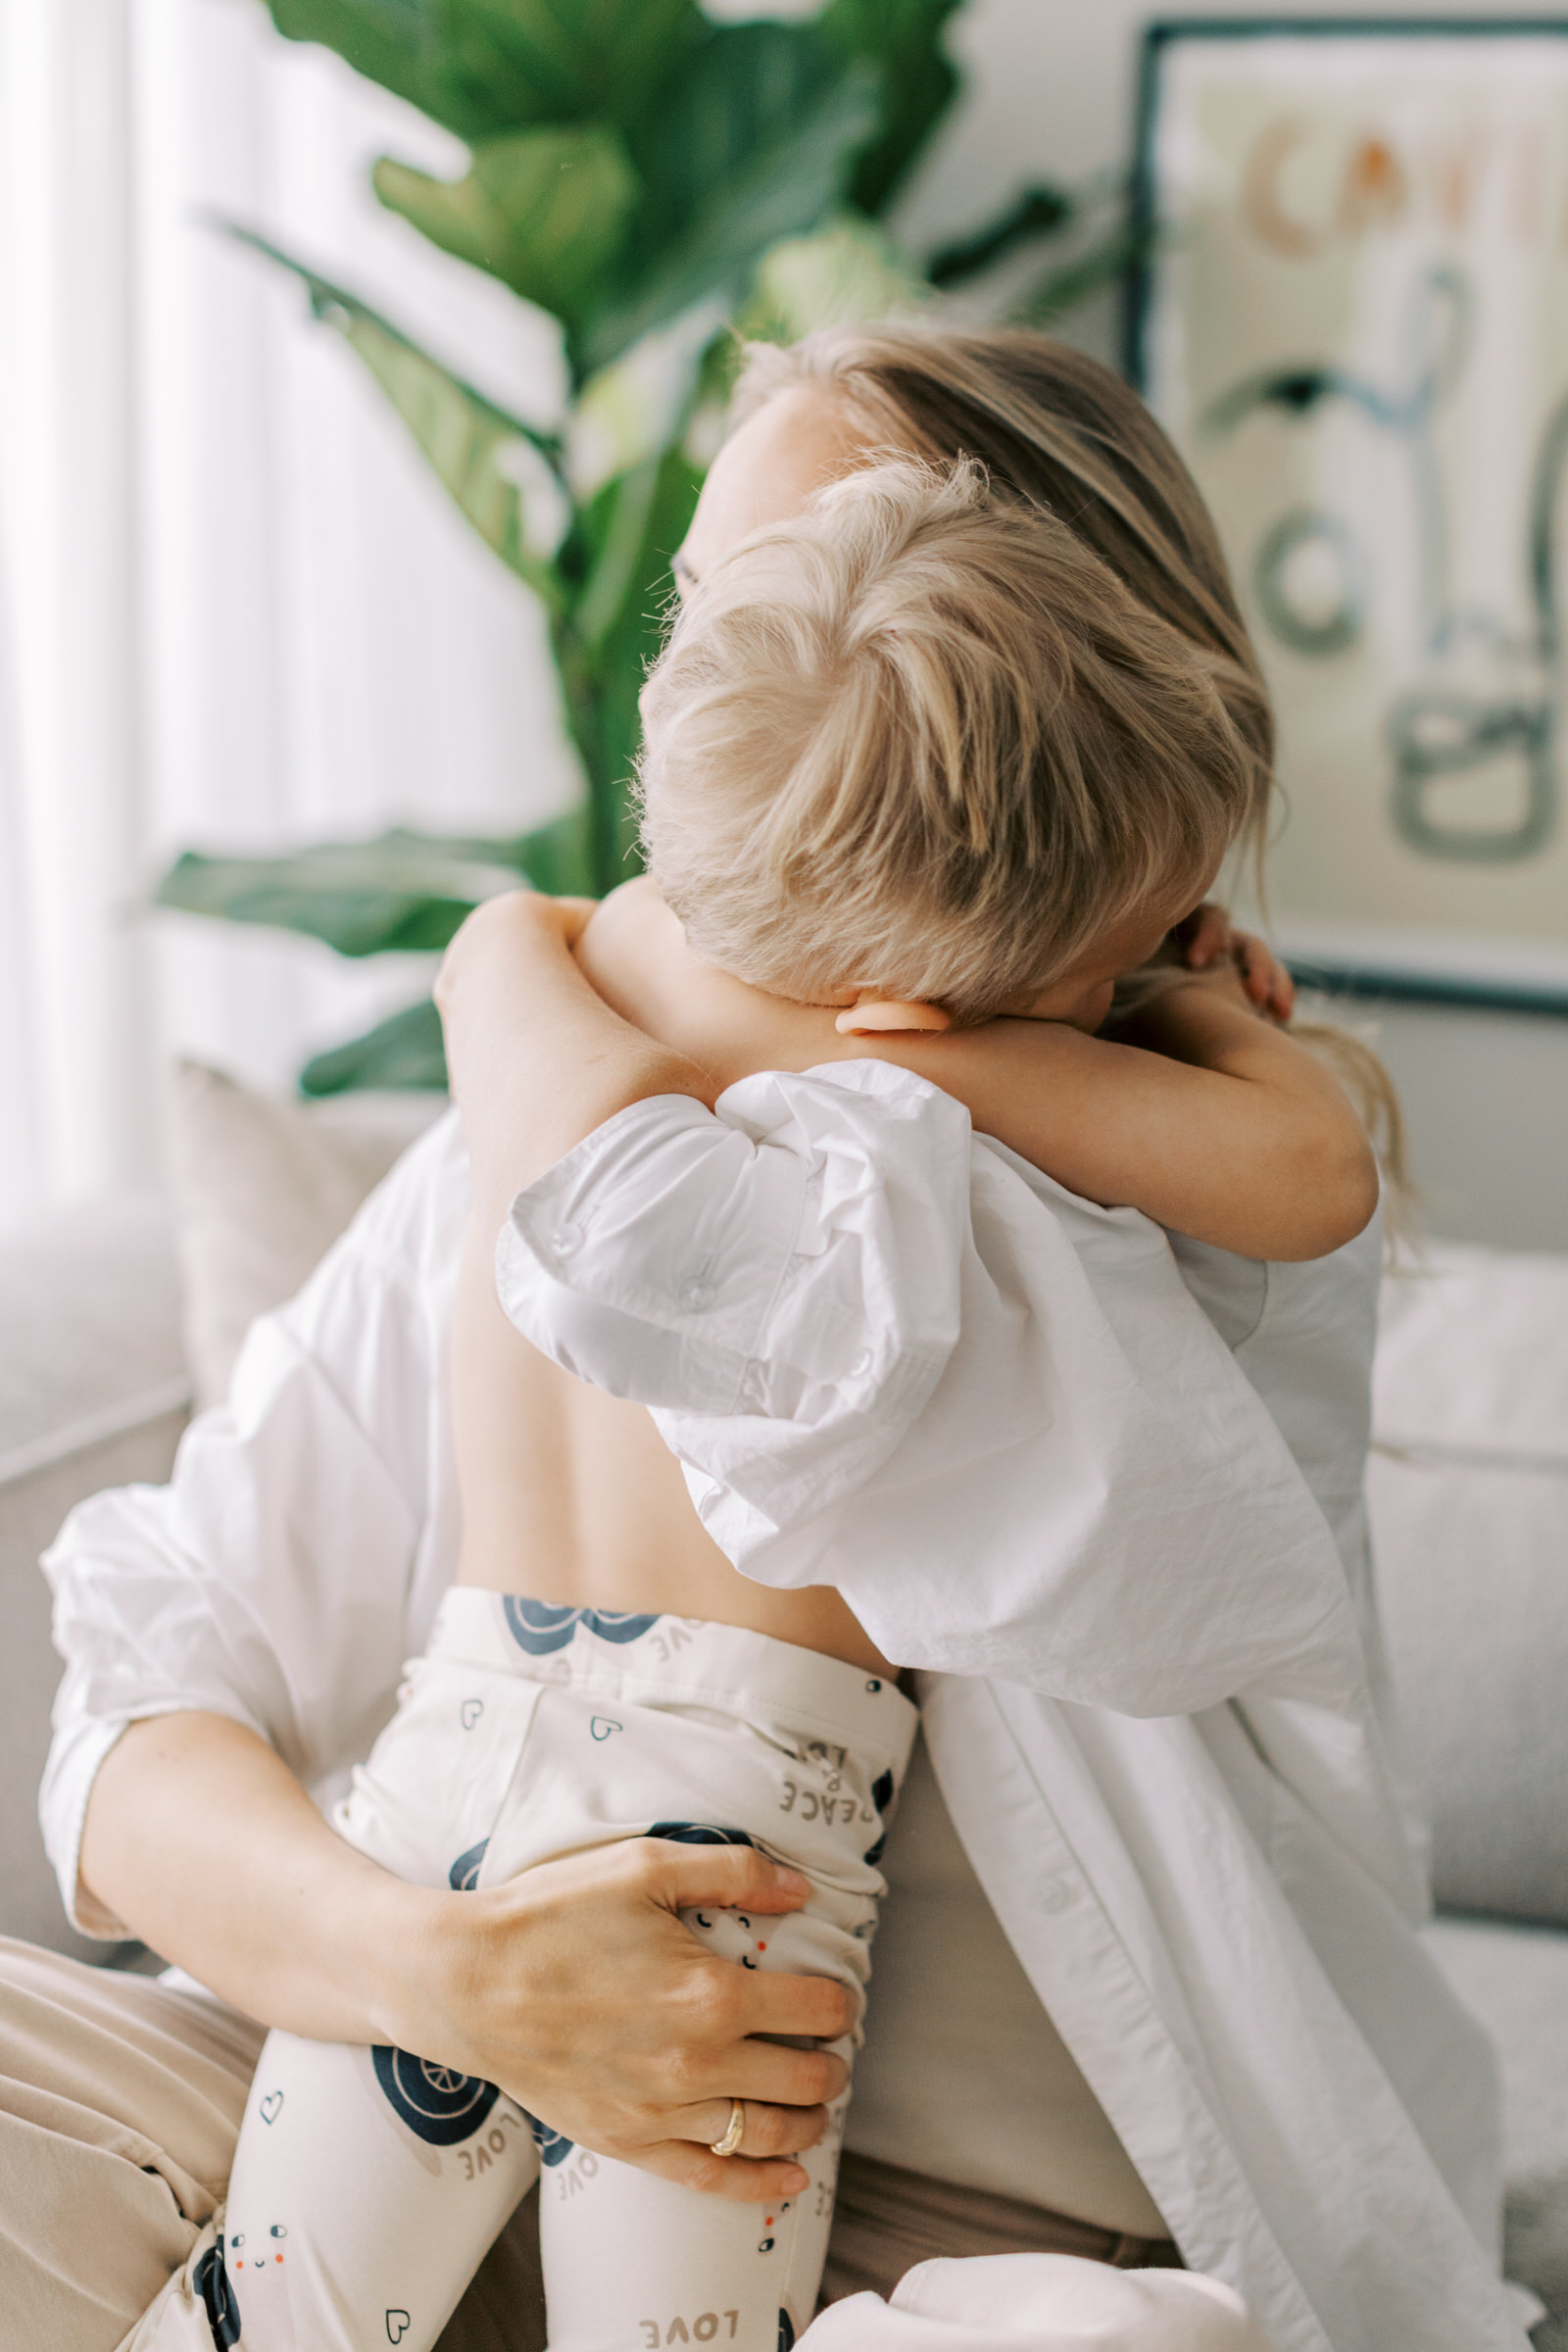 Familjefotografering i Västerås där sonen kramar om mamman i soffan